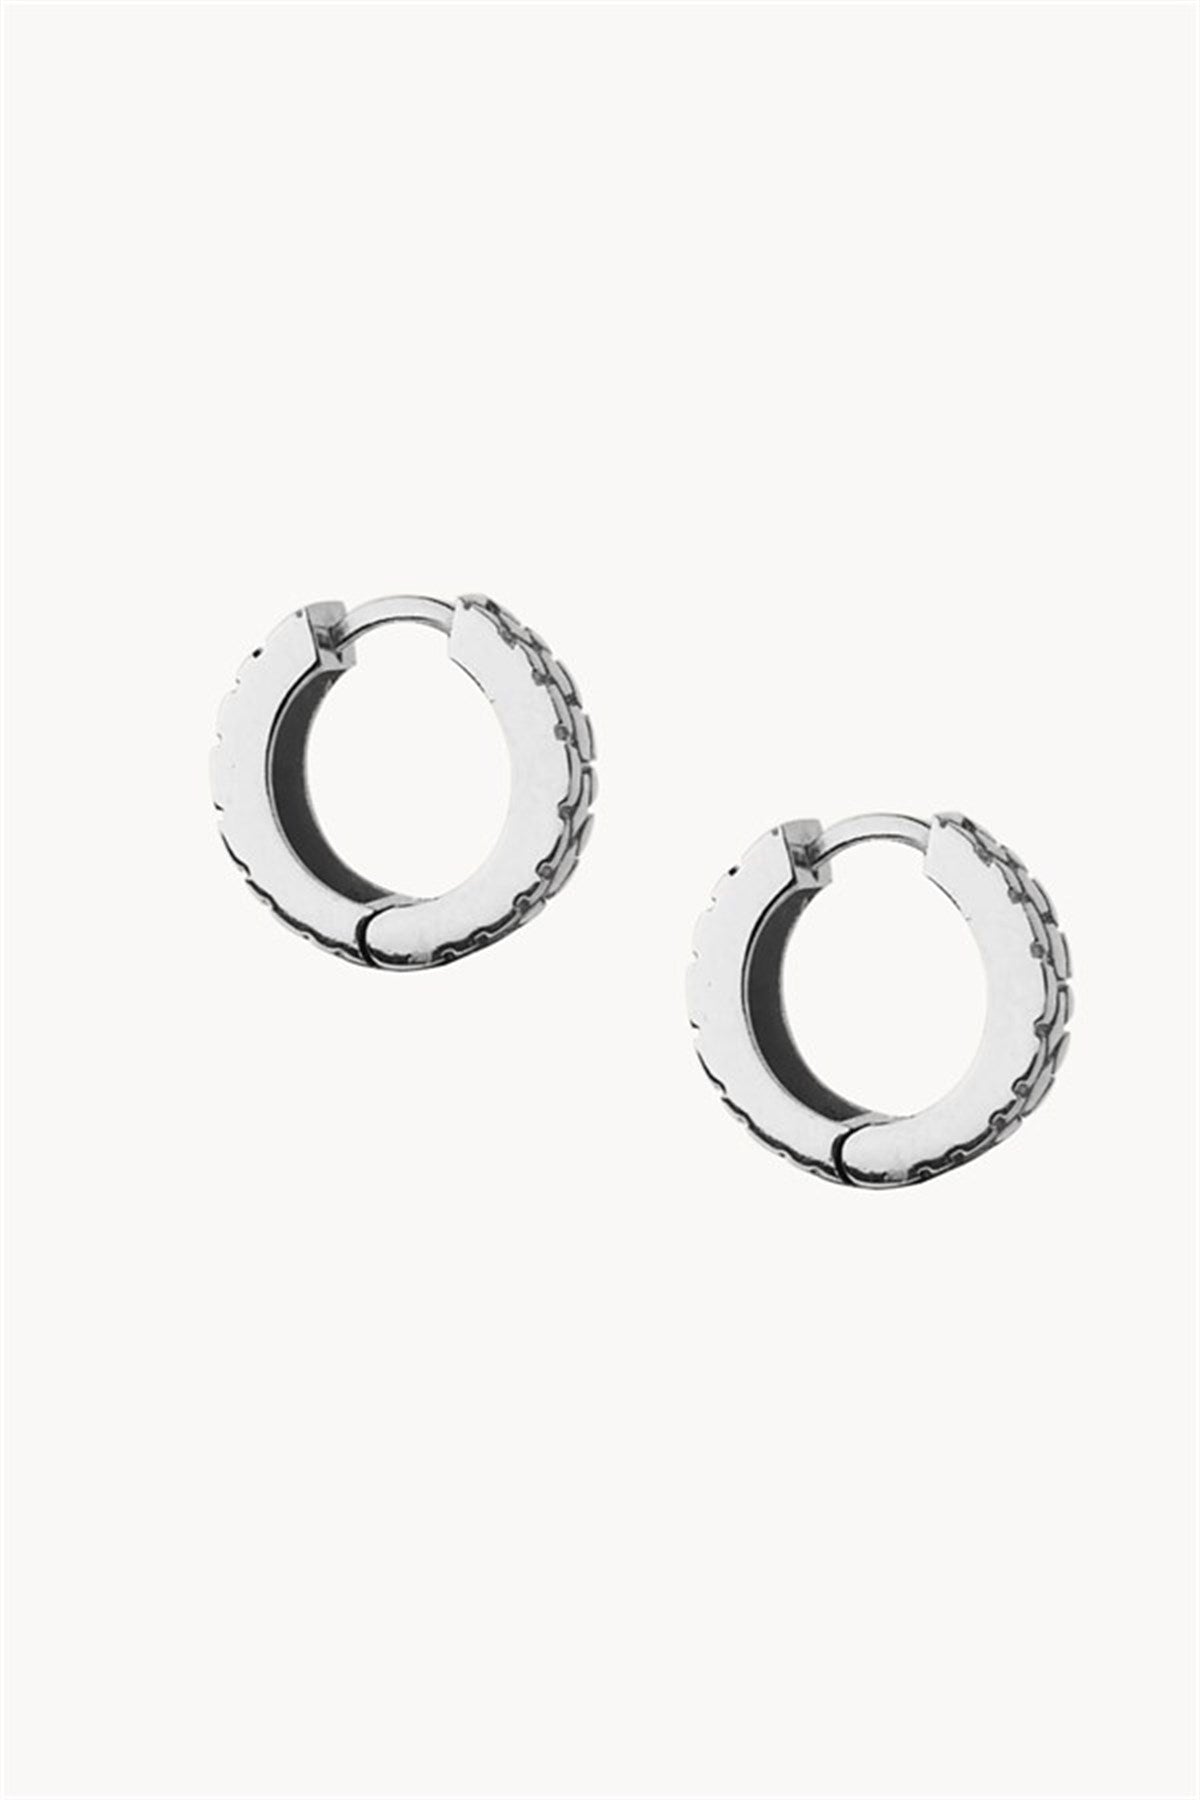 Textured Men's Hoop Earrings Silver Plated